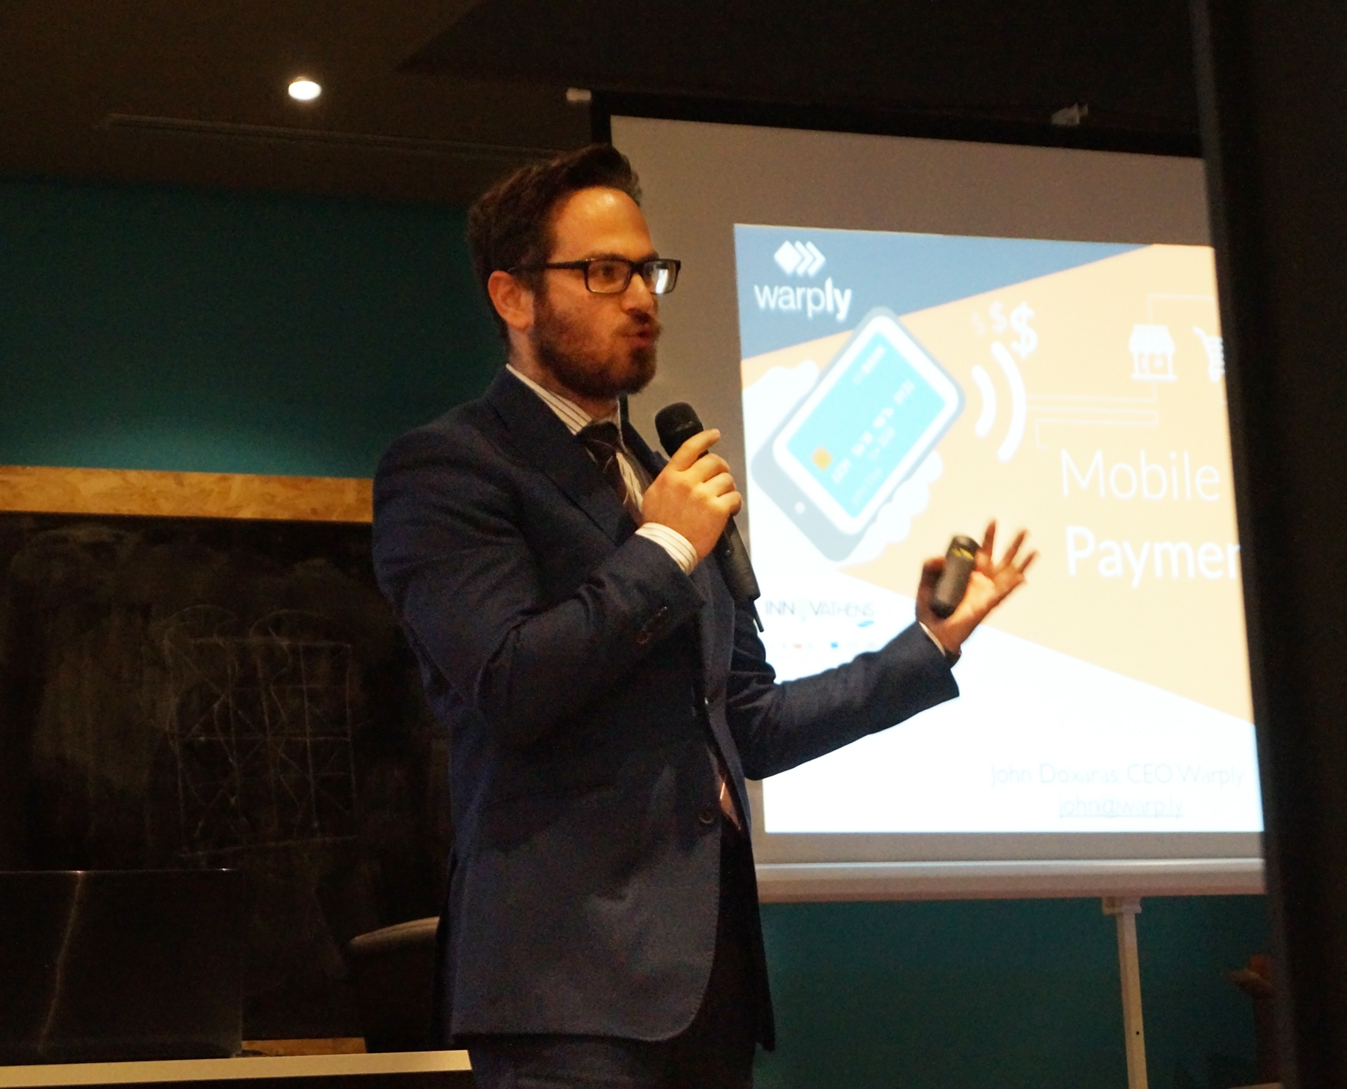 Η νέα εποχή στις πληρωμές μέσω κινητού  παρουσιάστηκε στην ημερίδα της Warply  για τα “Mobile Payments”